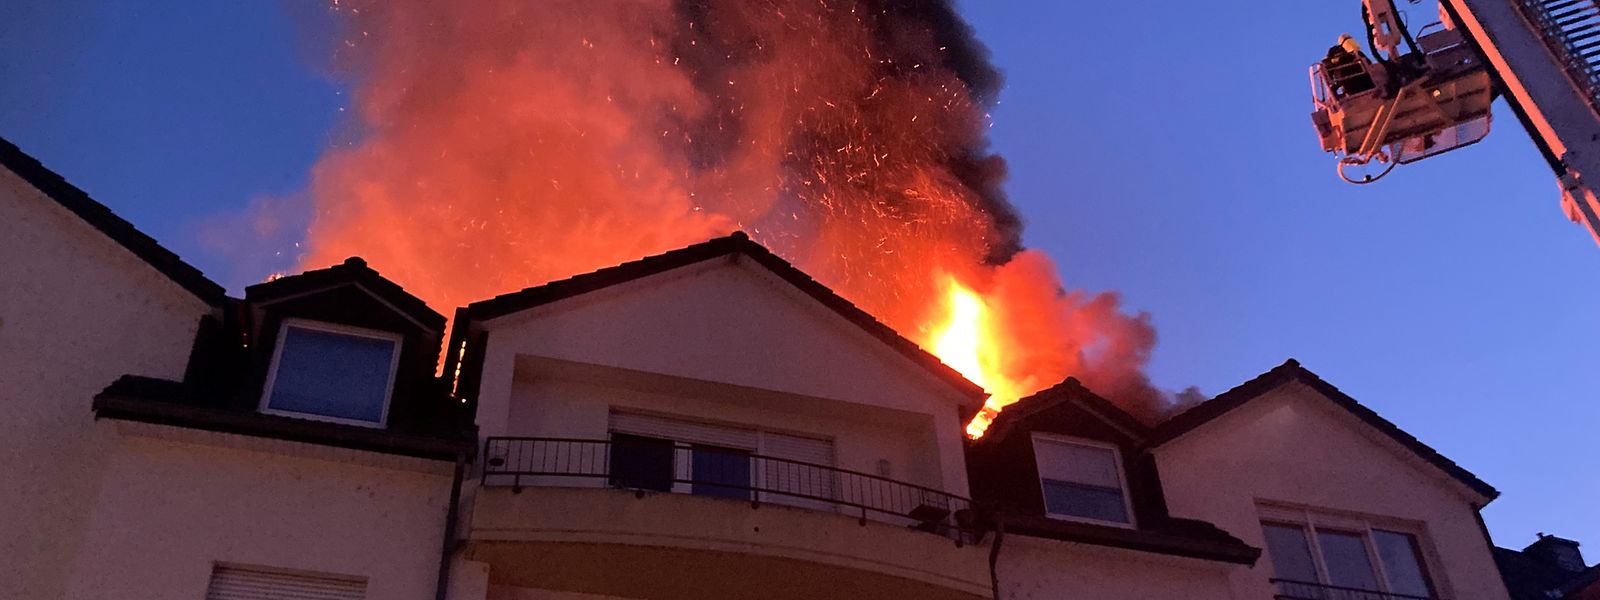 Der Dachstuhl des Hauses stand beim Eintreffen der Rettungskräfte lichterloh in Brand.